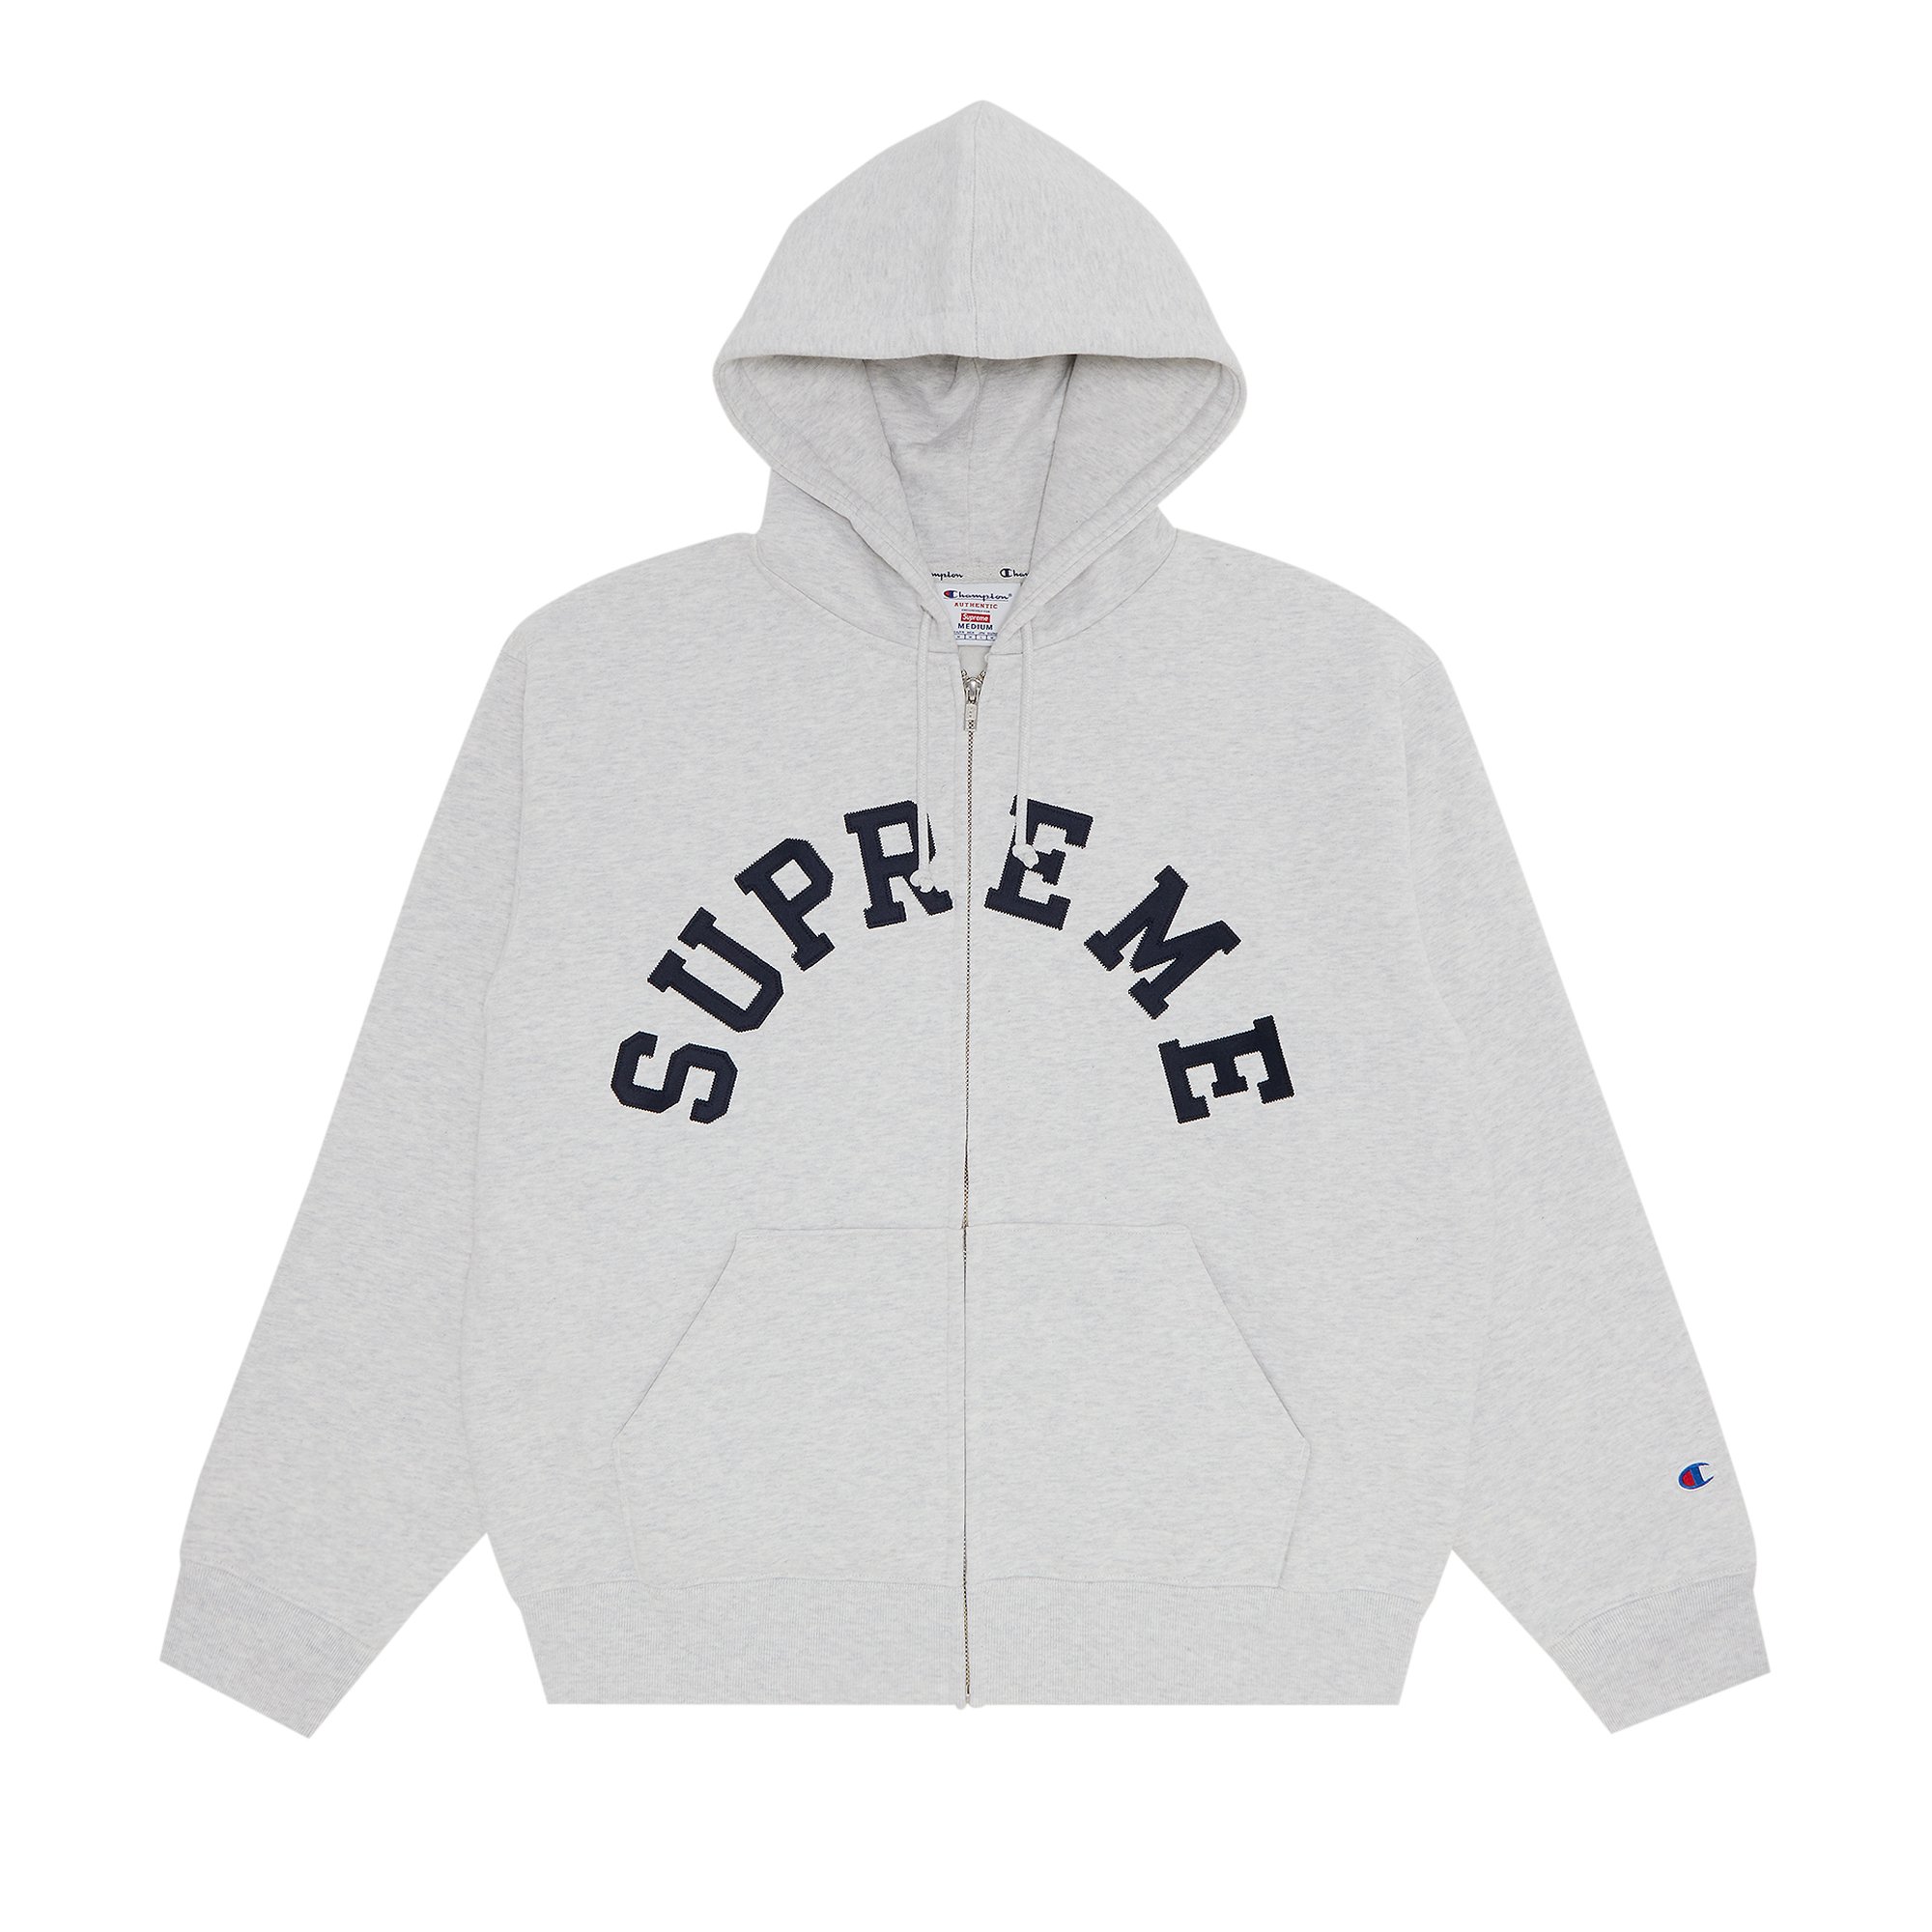 Supreme x Champion Zip Up Hooded Sweatshirt 'Ash Grey'